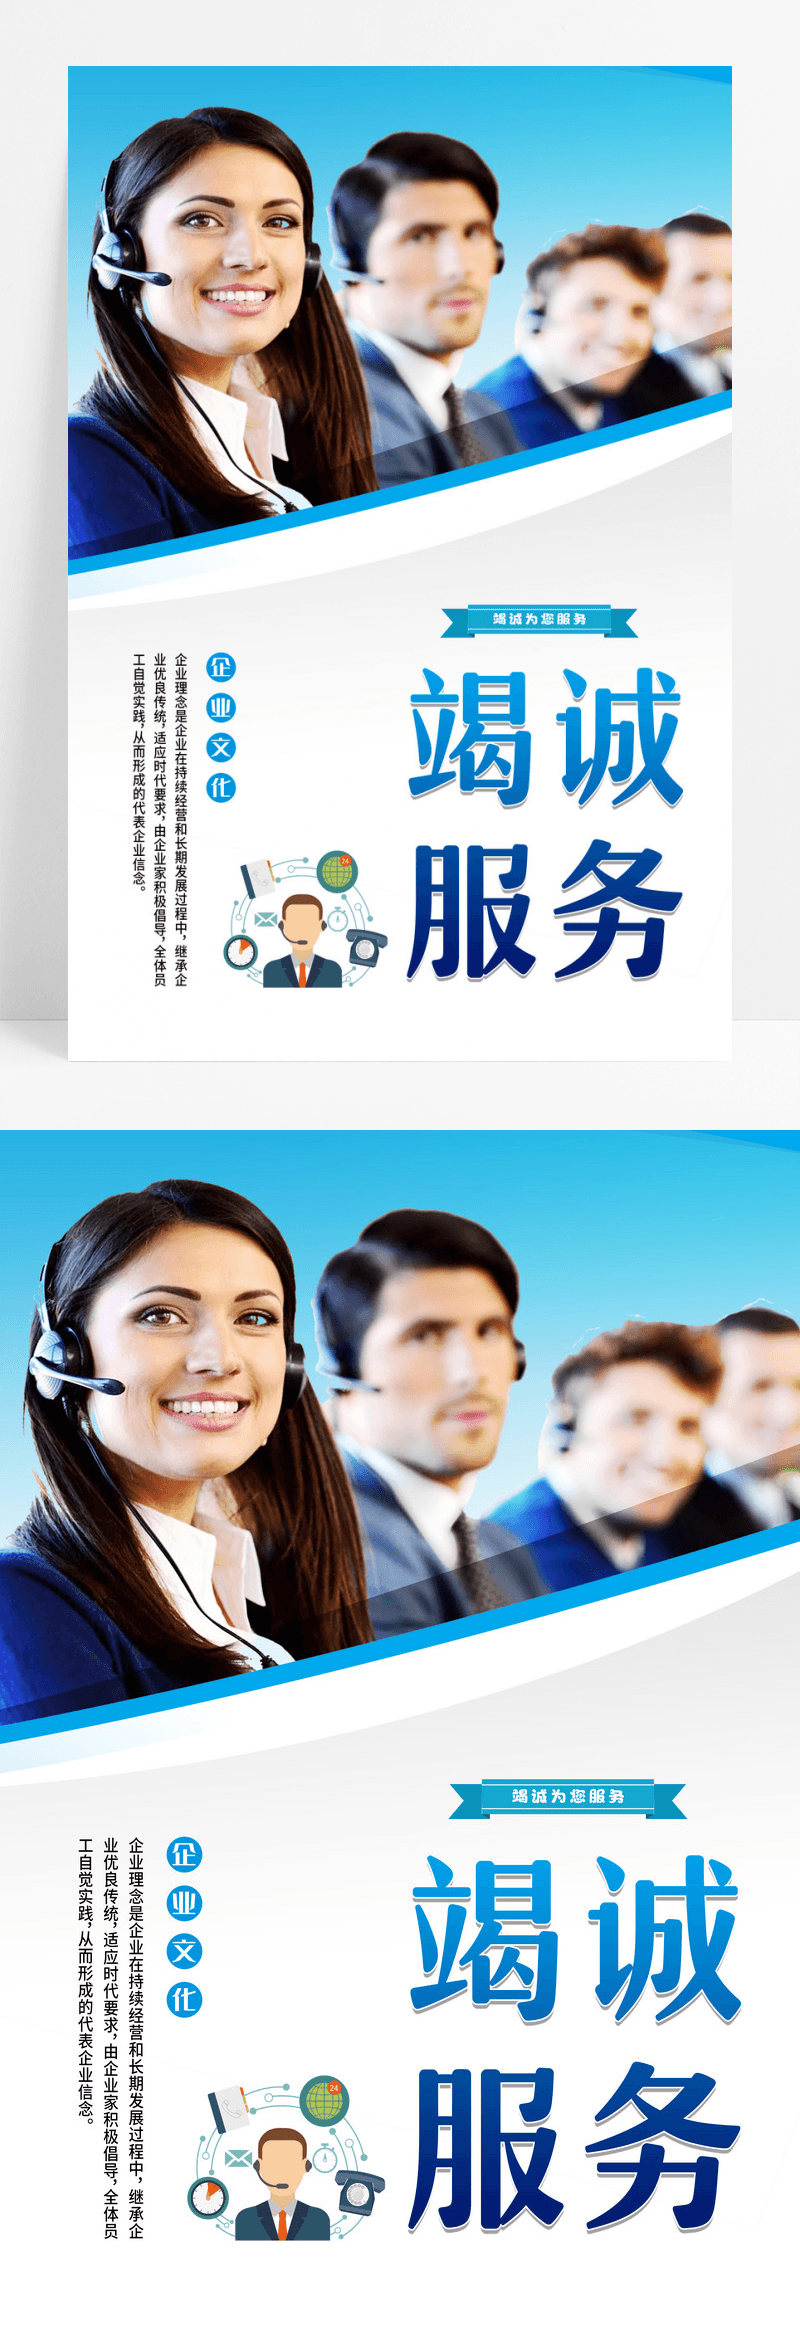 蓝色简约竭诚服务客服招聘企业招聘宣传海报设计 